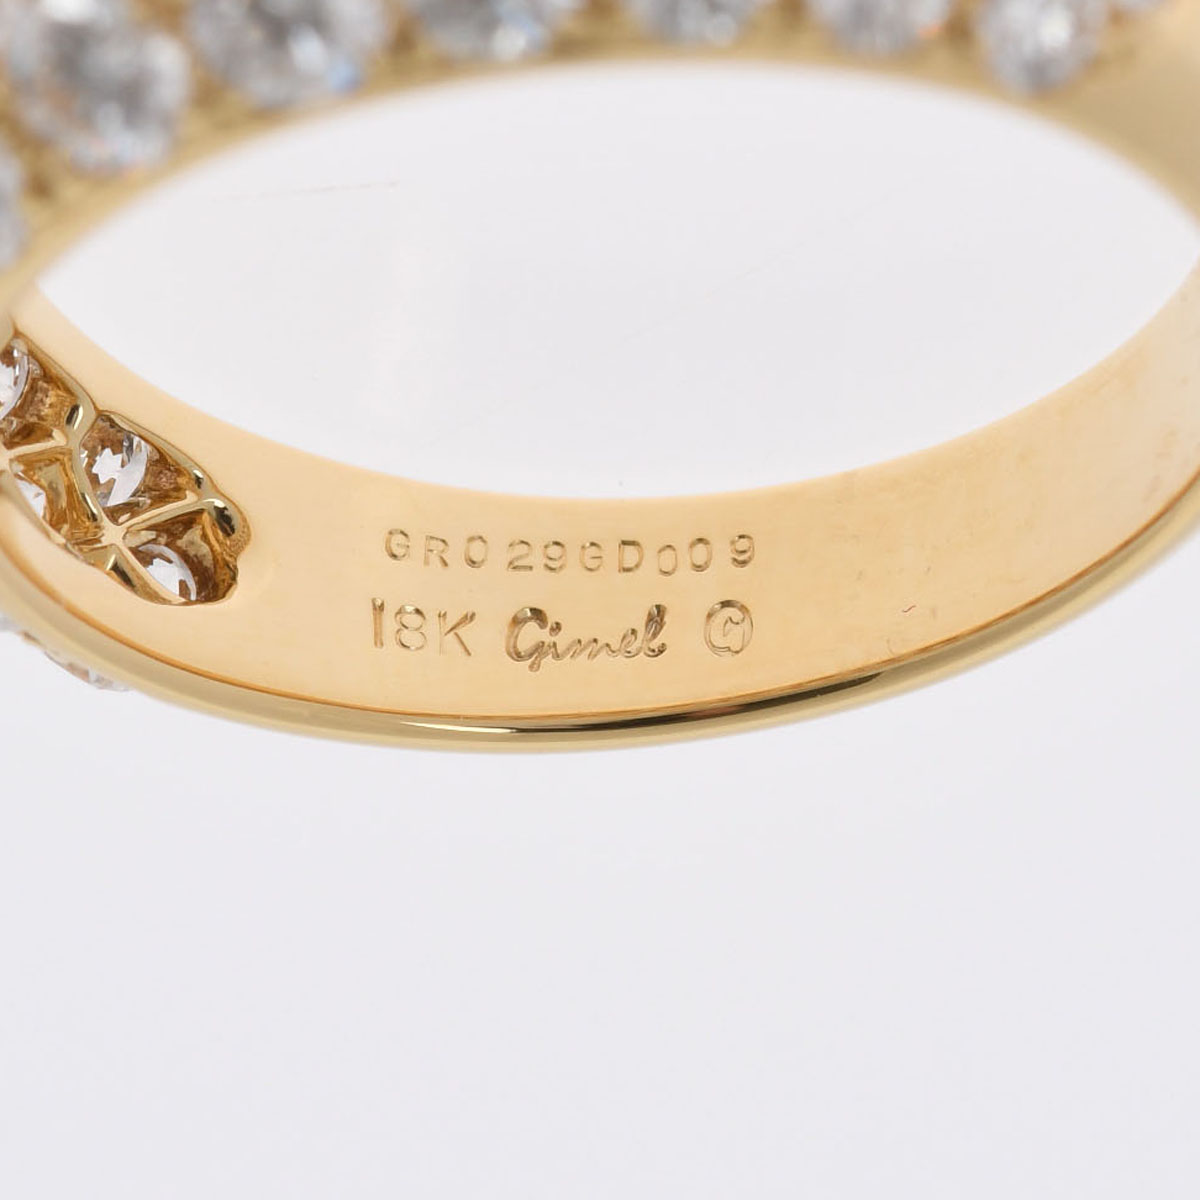 ギメル / Gimel パヴェダイヤリング D2.005ct ゴールド K18イエローゴールド レディース ジュエリー 【中古】【jewelry】